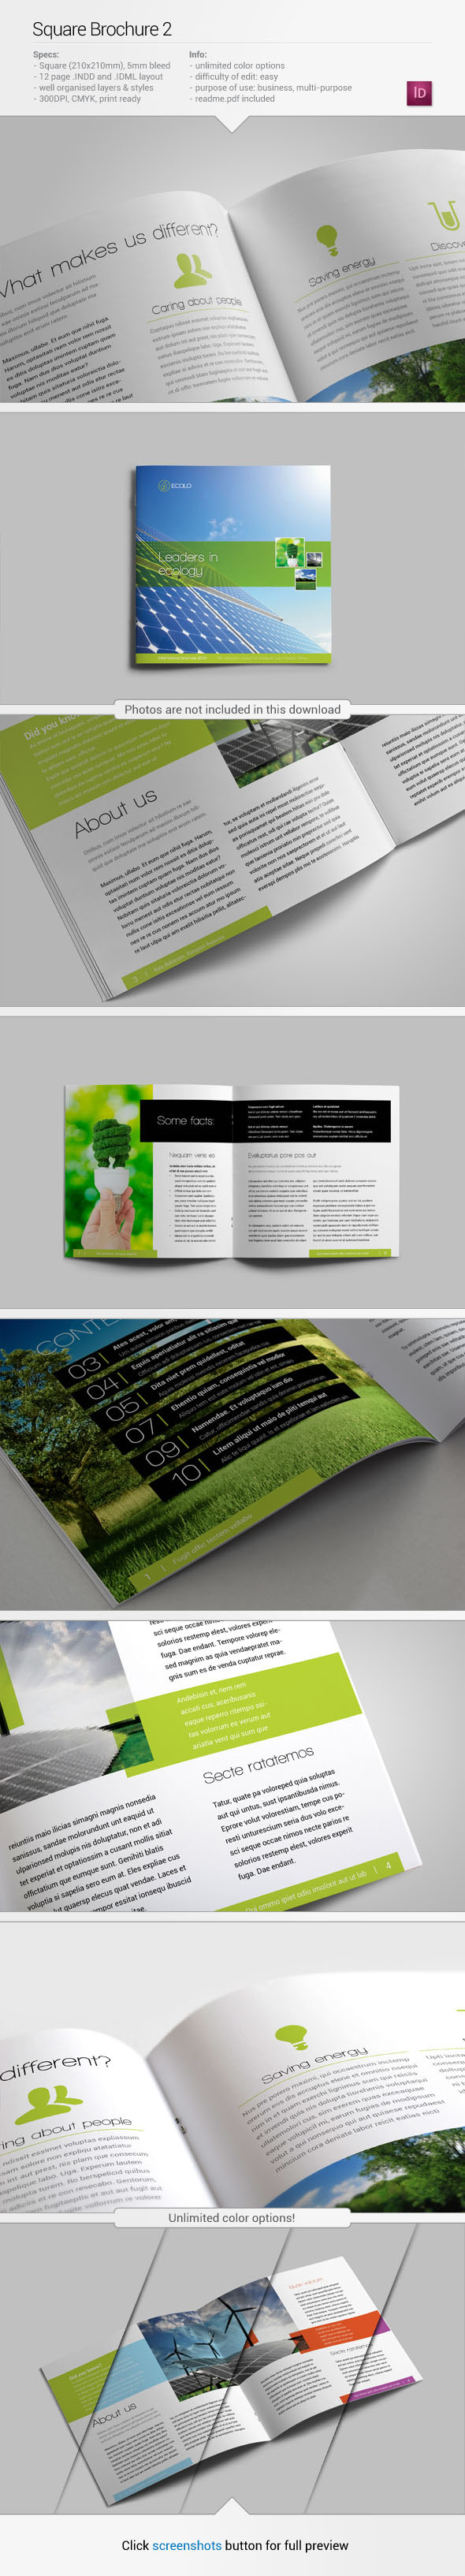 square brochure template graphic print design